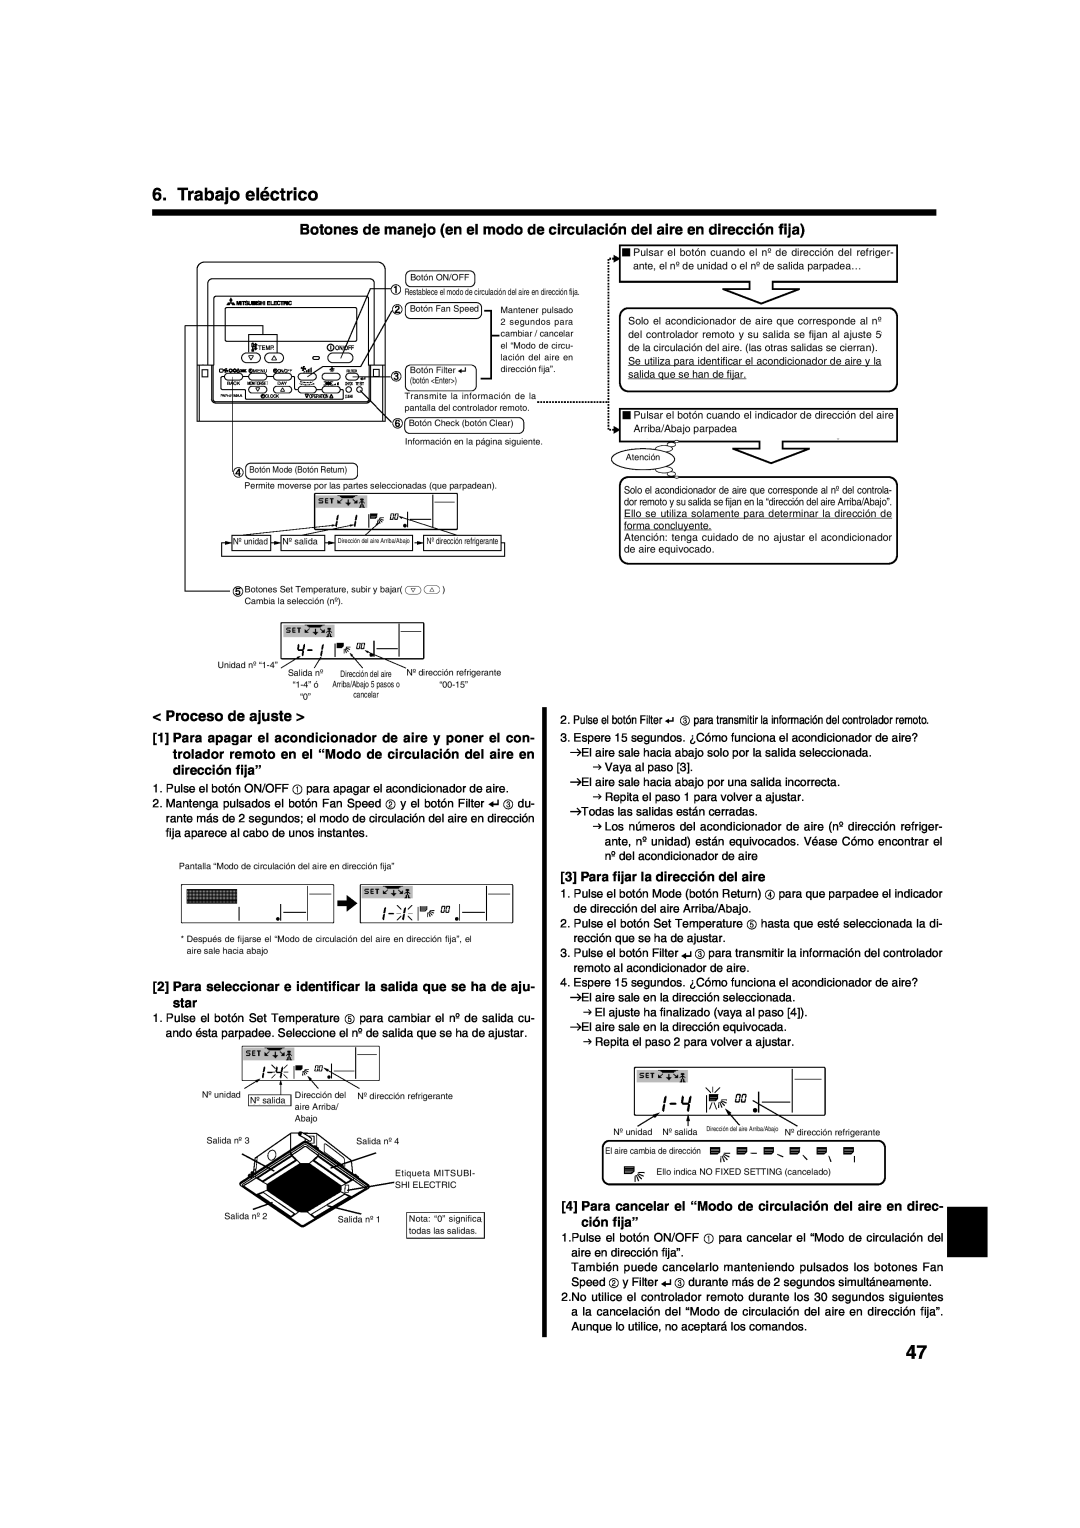 Mitsumi electronic PLA-ABA installation manual Proceso de ajuste, Trabajo eléctrico 